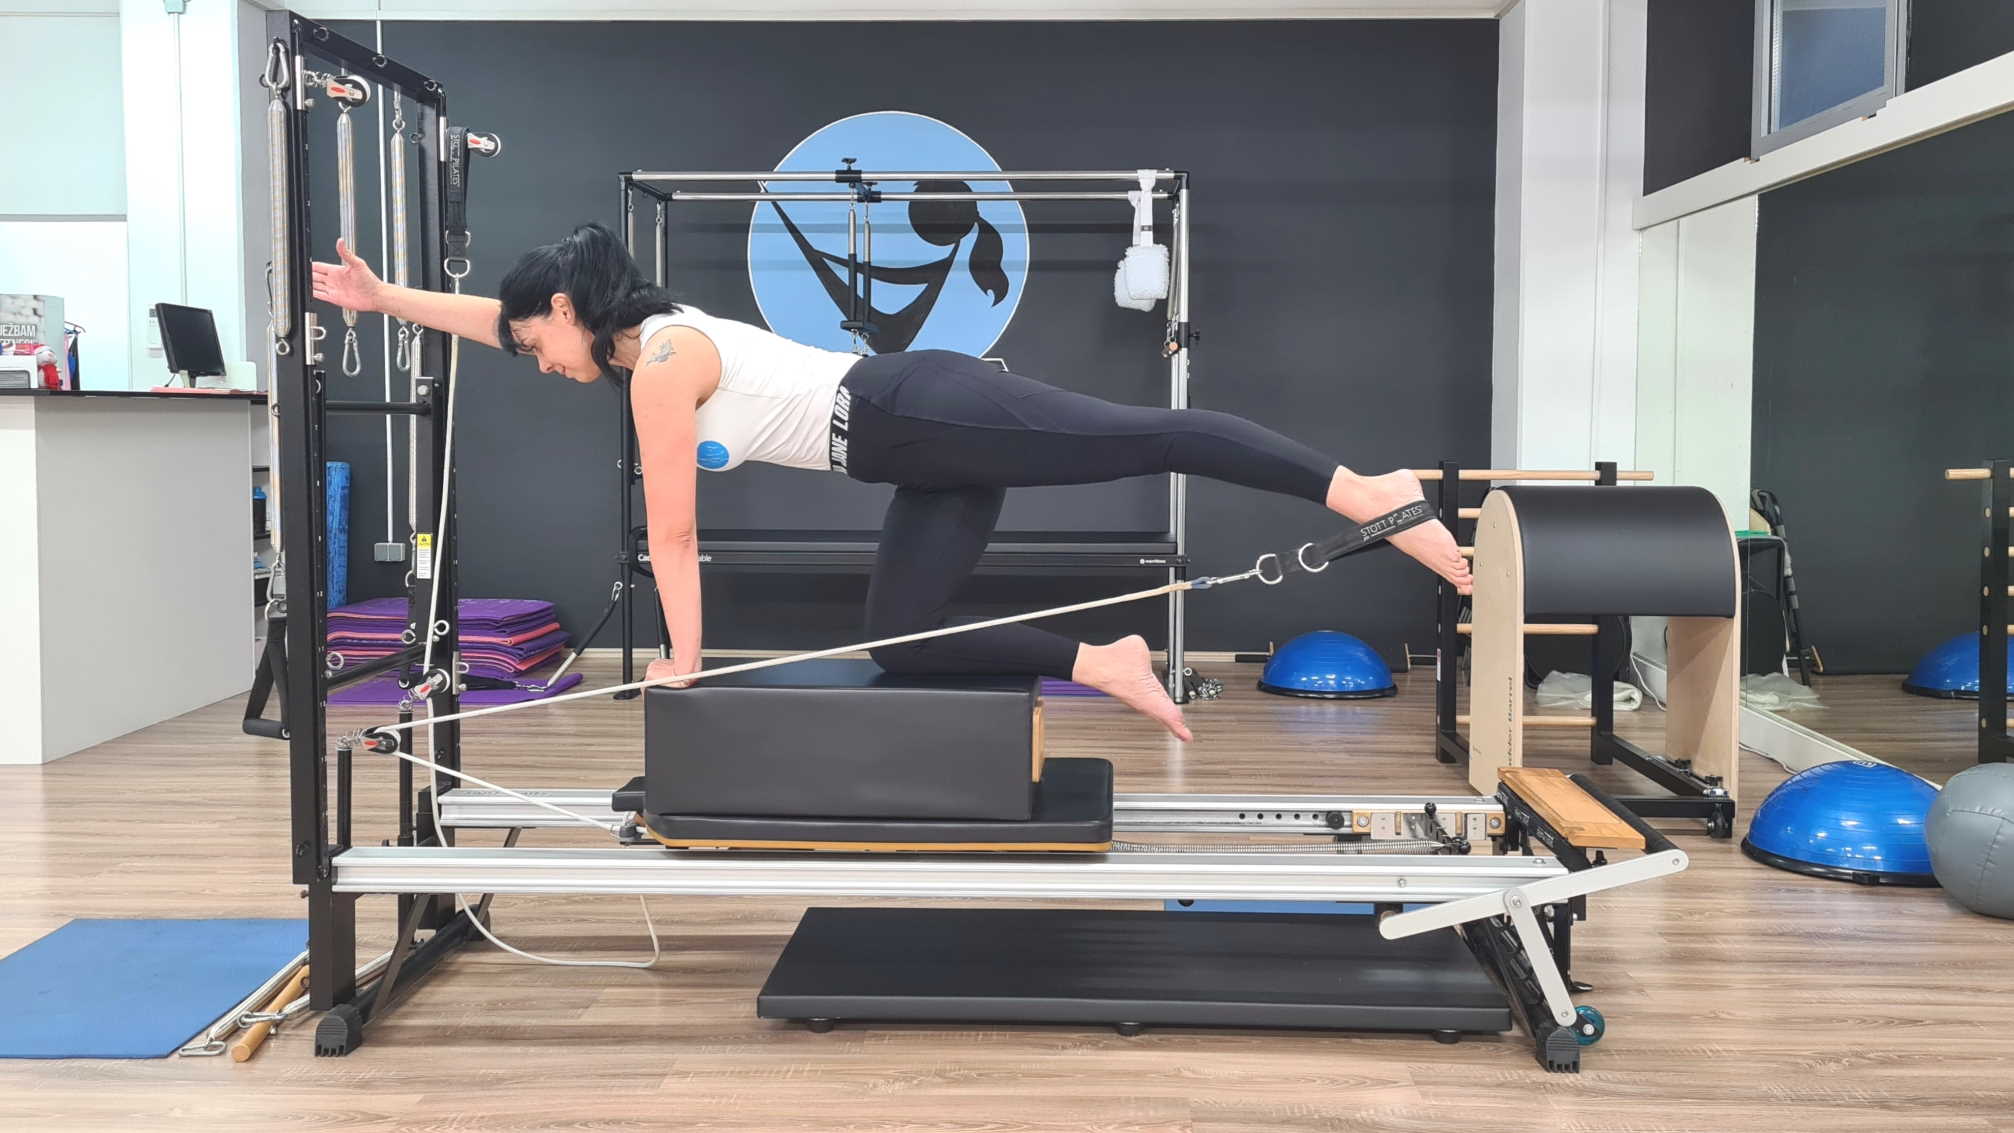 Pilatesom do zdravlja: pilates metoda vježbanja za zdravlje kralježnice